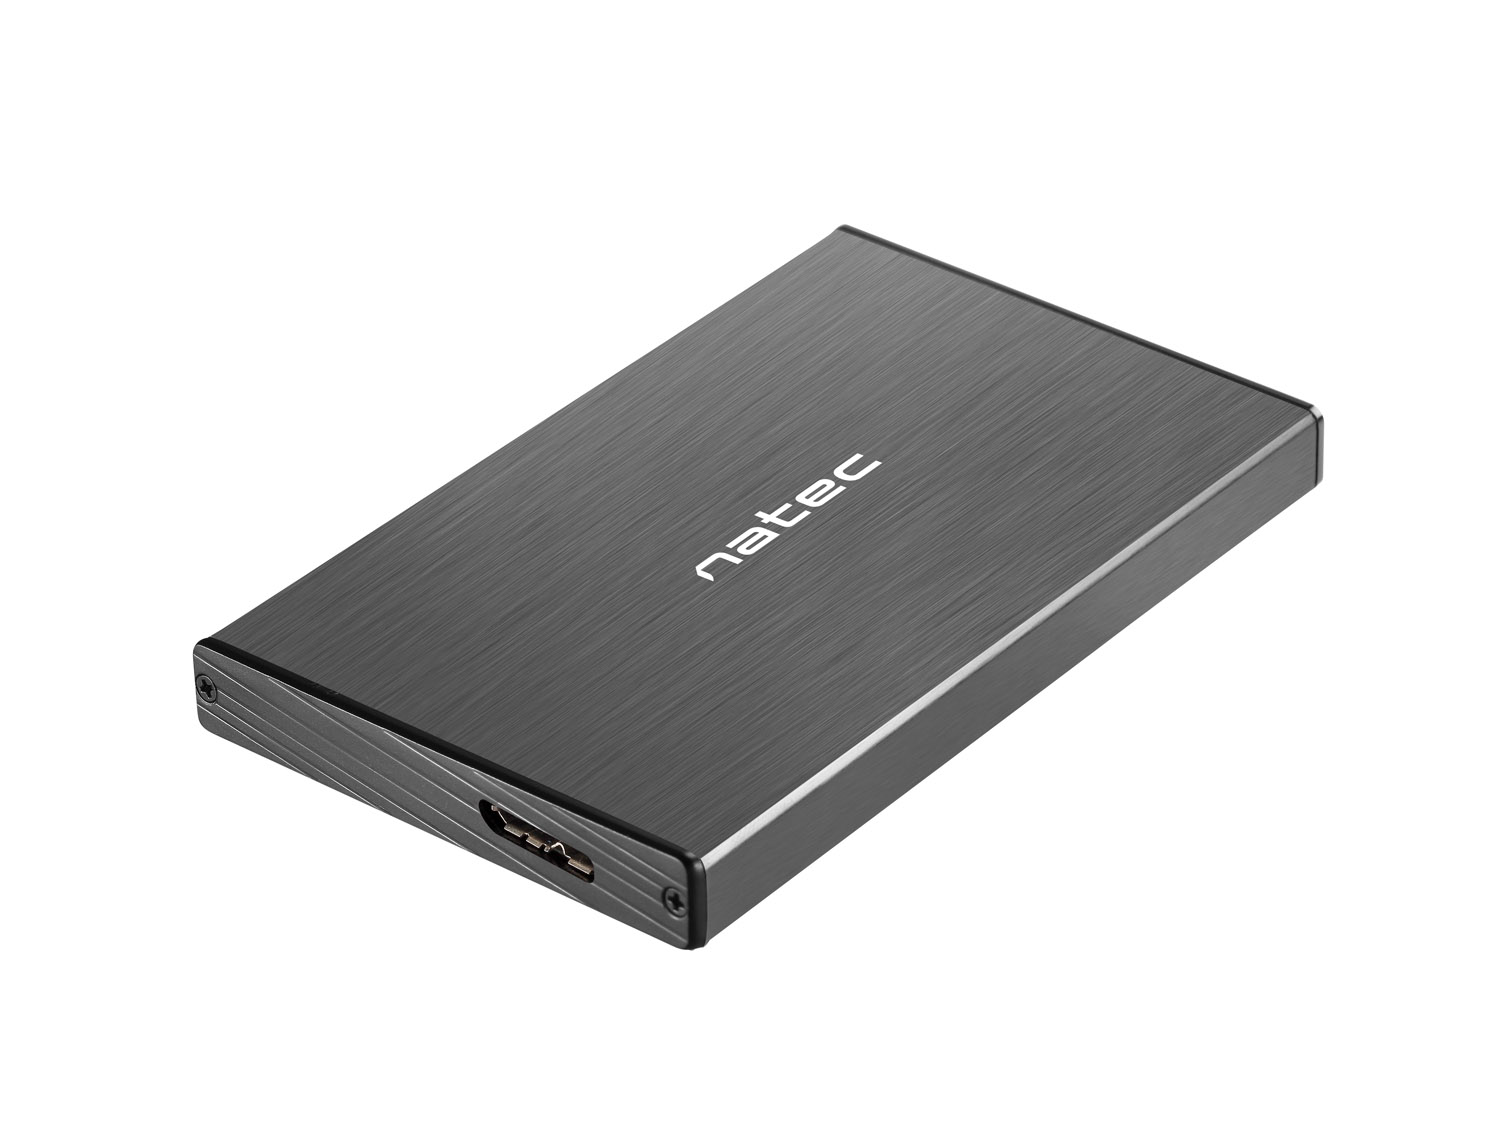 Obrázek Externí box pro HDD 2,5" USB 3.0 Natec Rhino Go, černý, hliníkové tělo